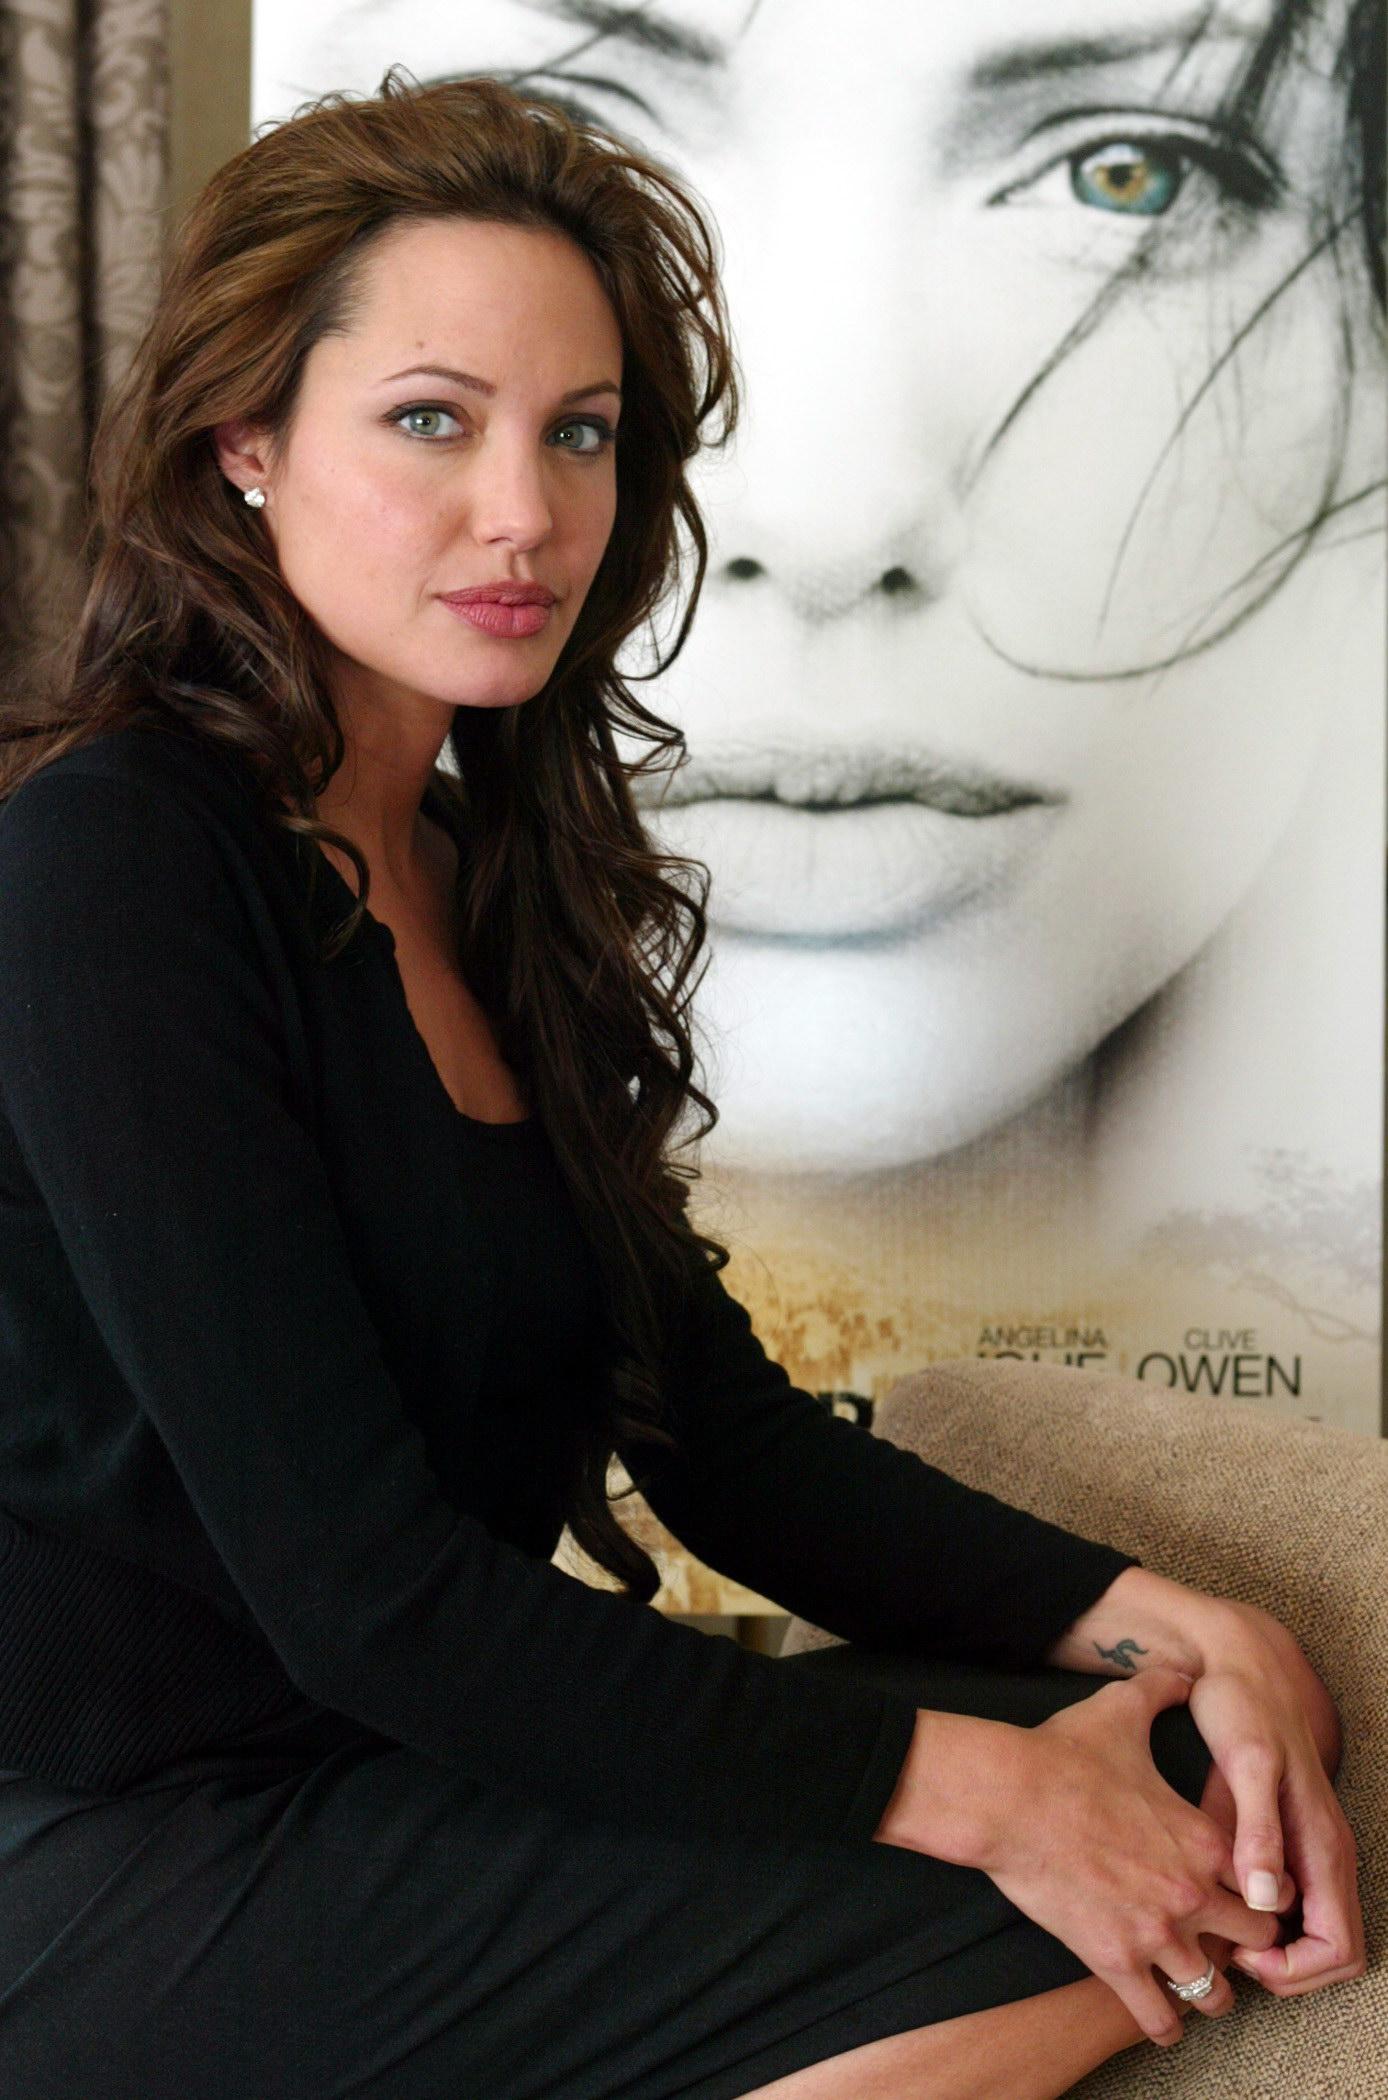 Angelina Jolie wallpaper №7654.